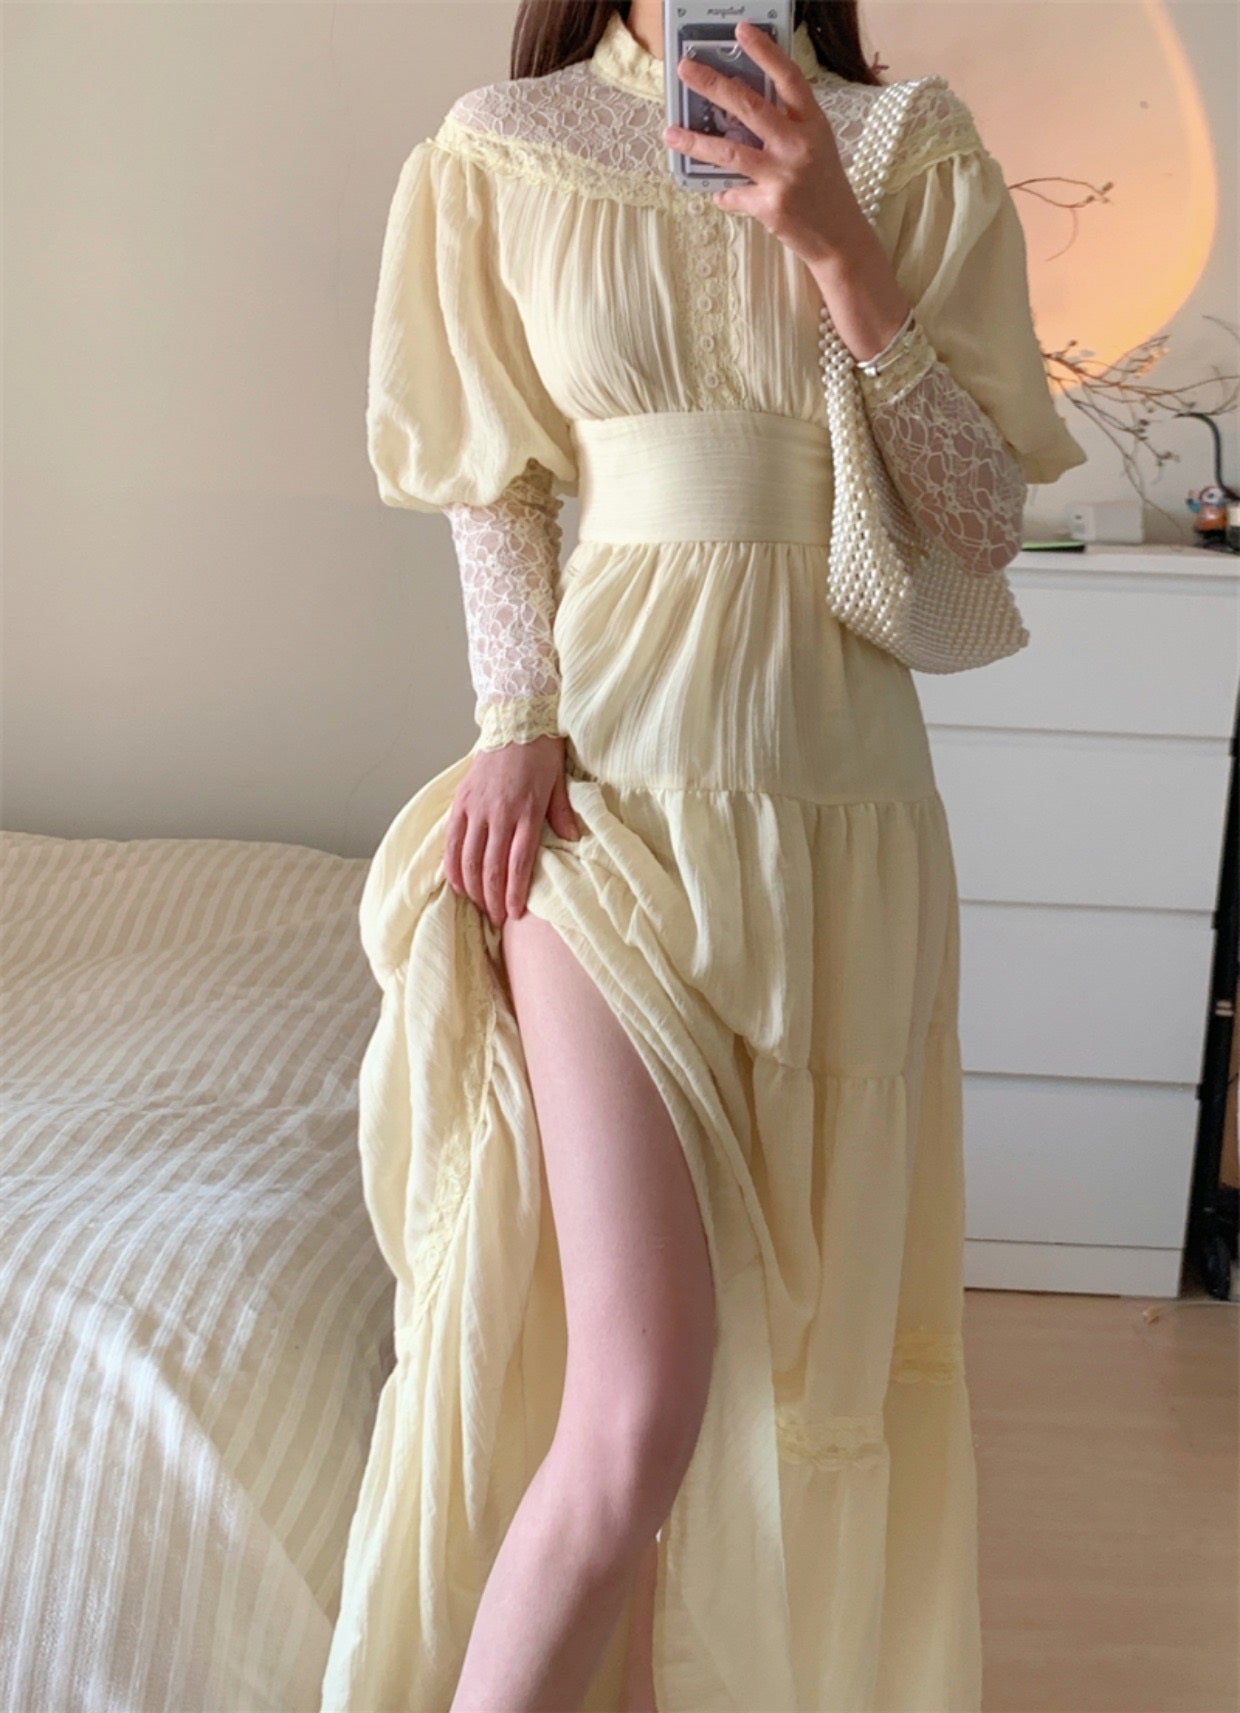 Women's Long Sleeve Dresses | Nordstrom